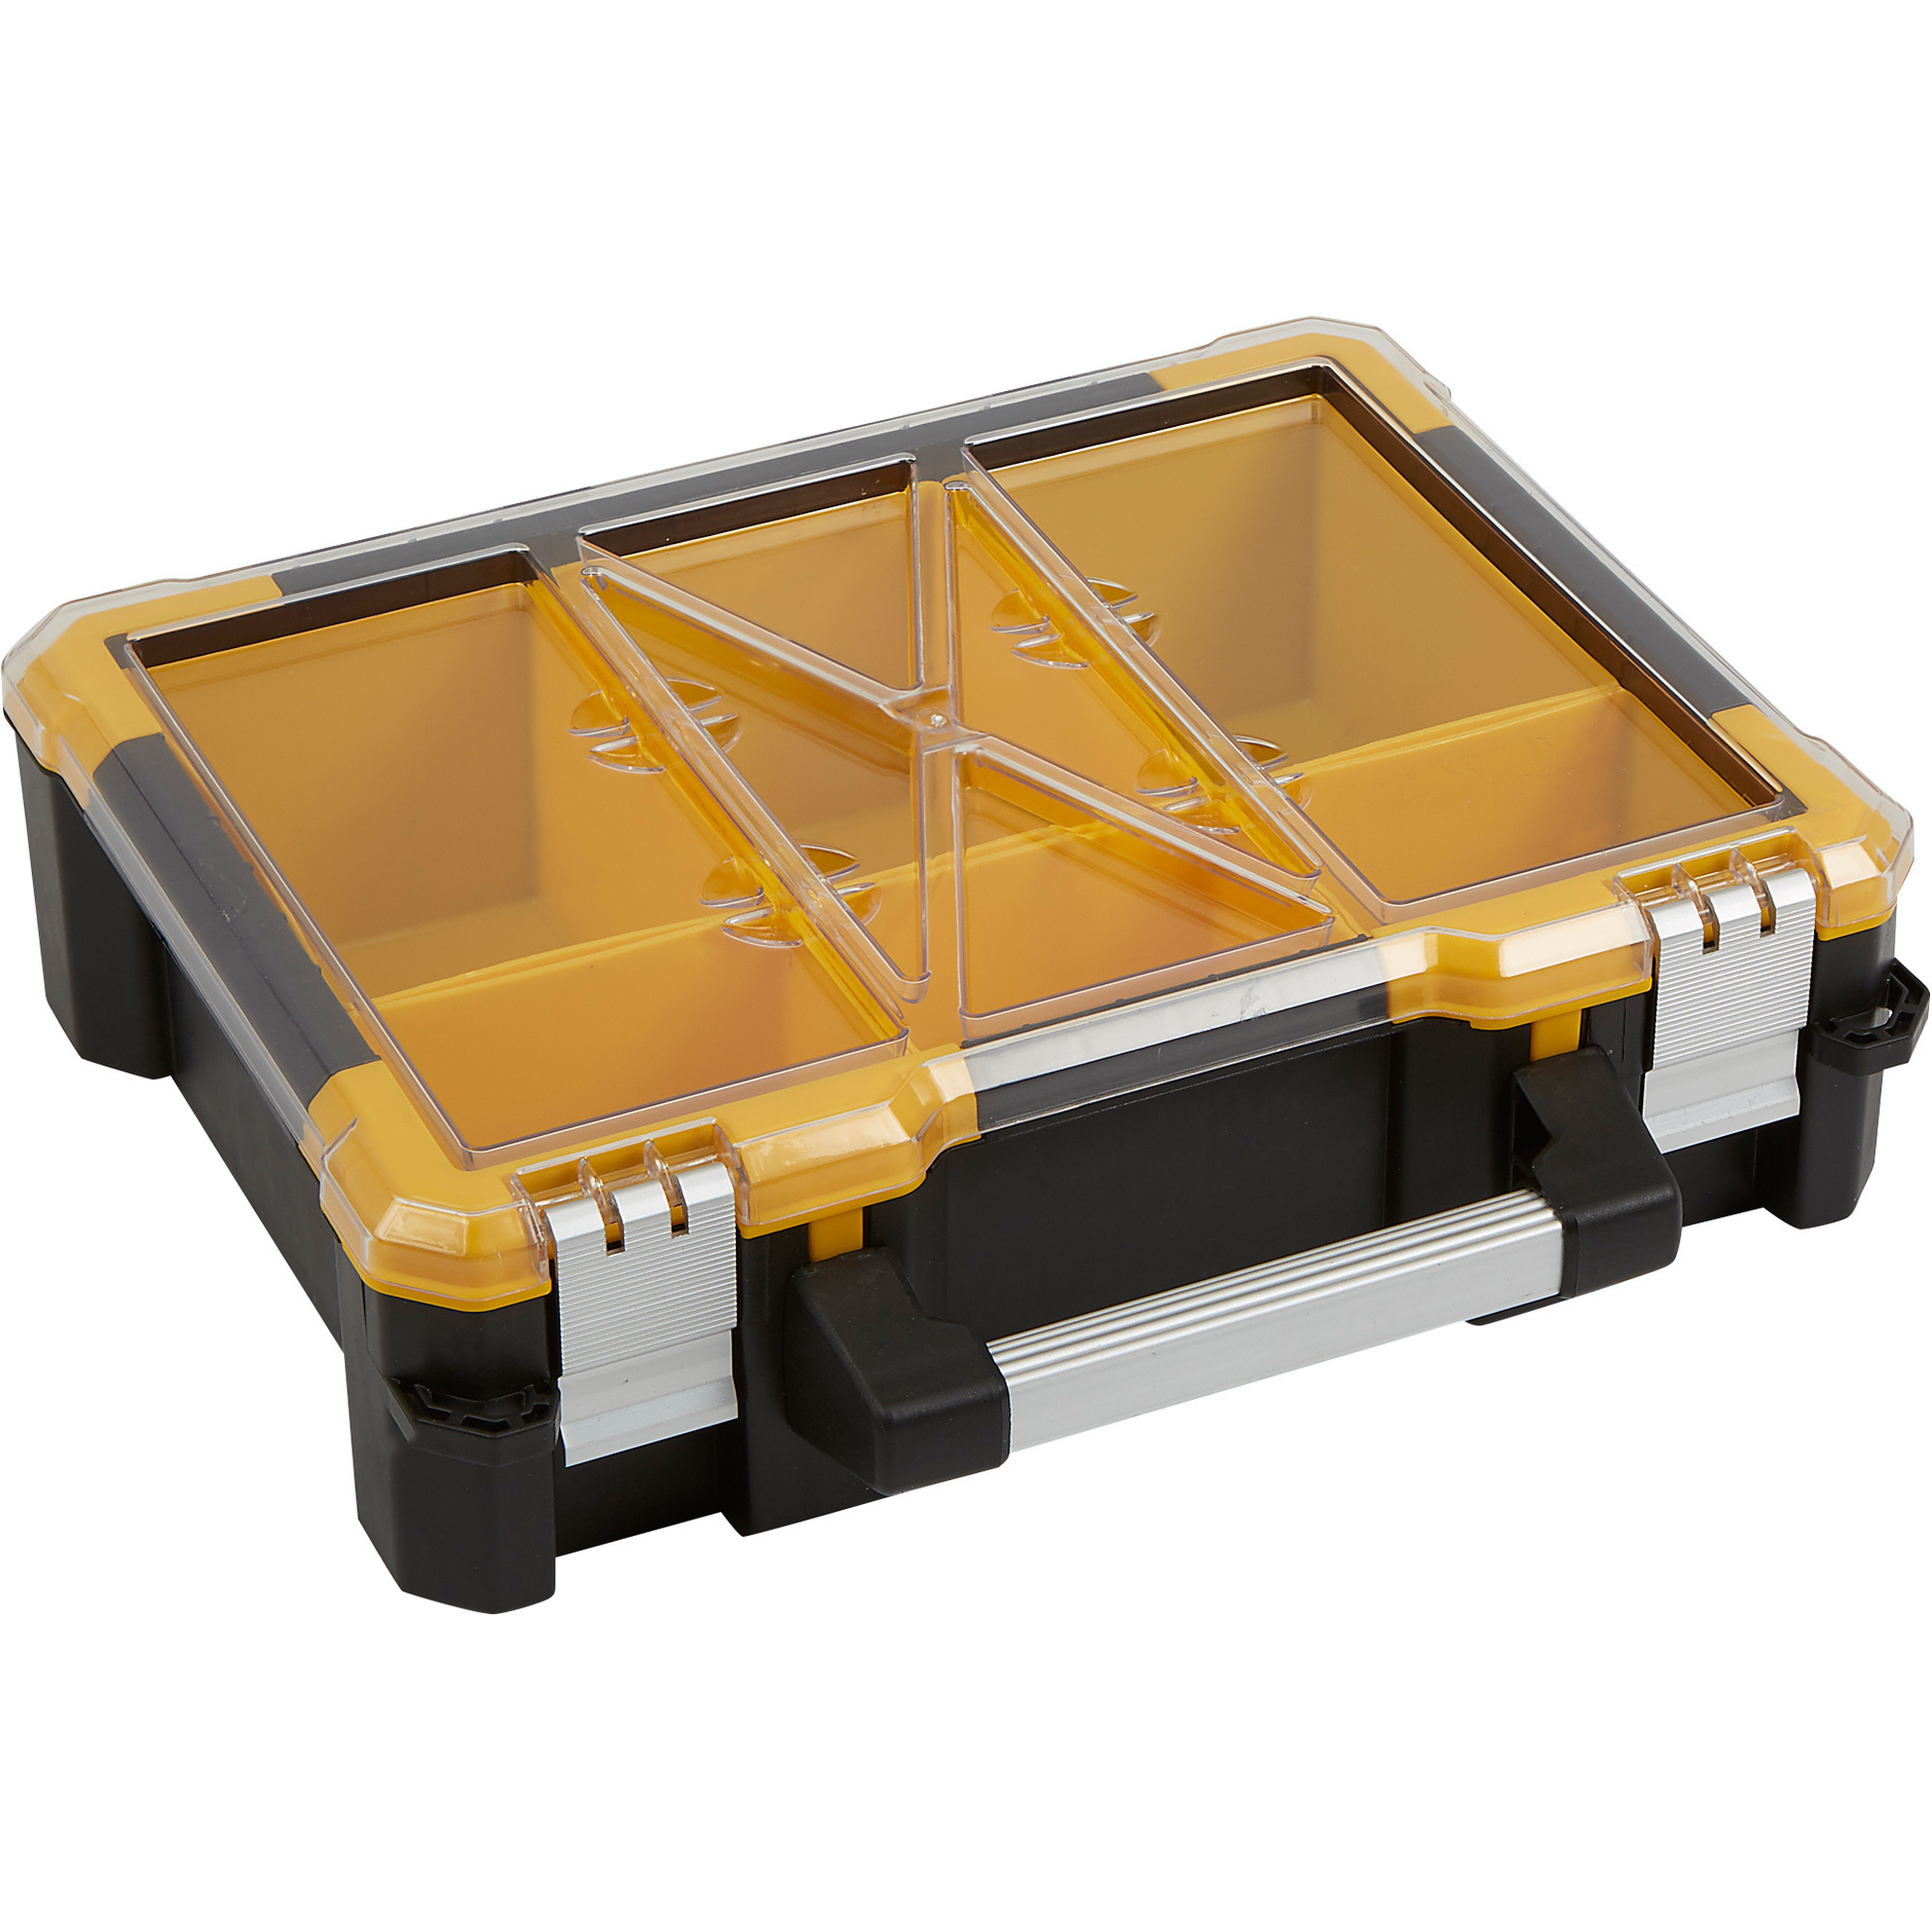 X-Space Plastic Storage Box With 6 Bins, 15Inch W x 13 7/16Inch D x 4 5/16Inch H